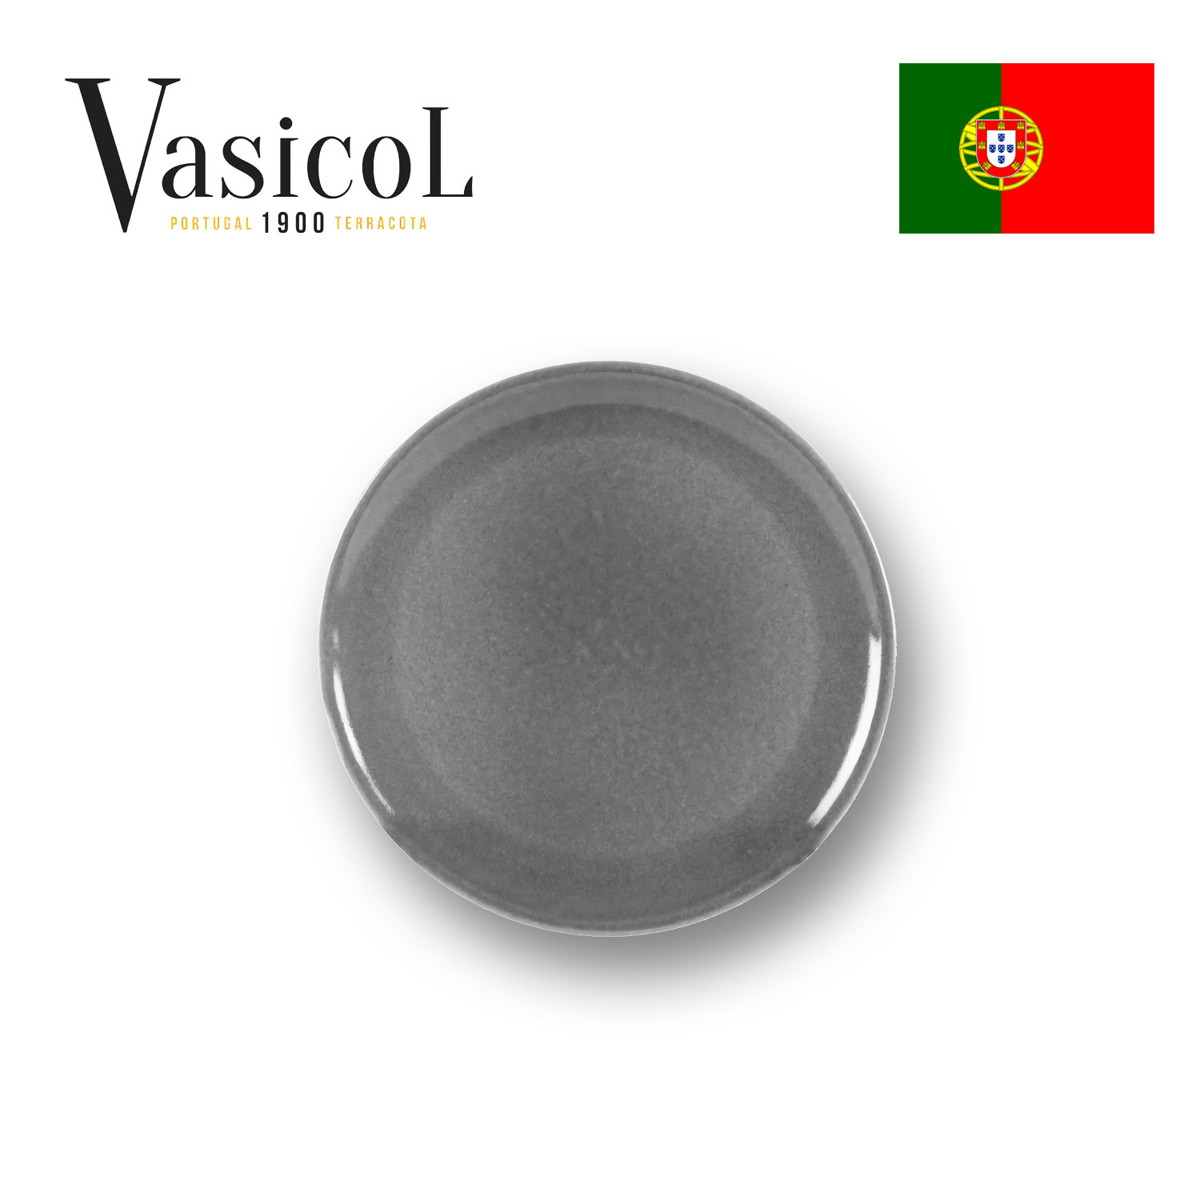 MARIA デザートプレート プレーン 皿 食器 ポルトガル製 テラコッタ 陶器